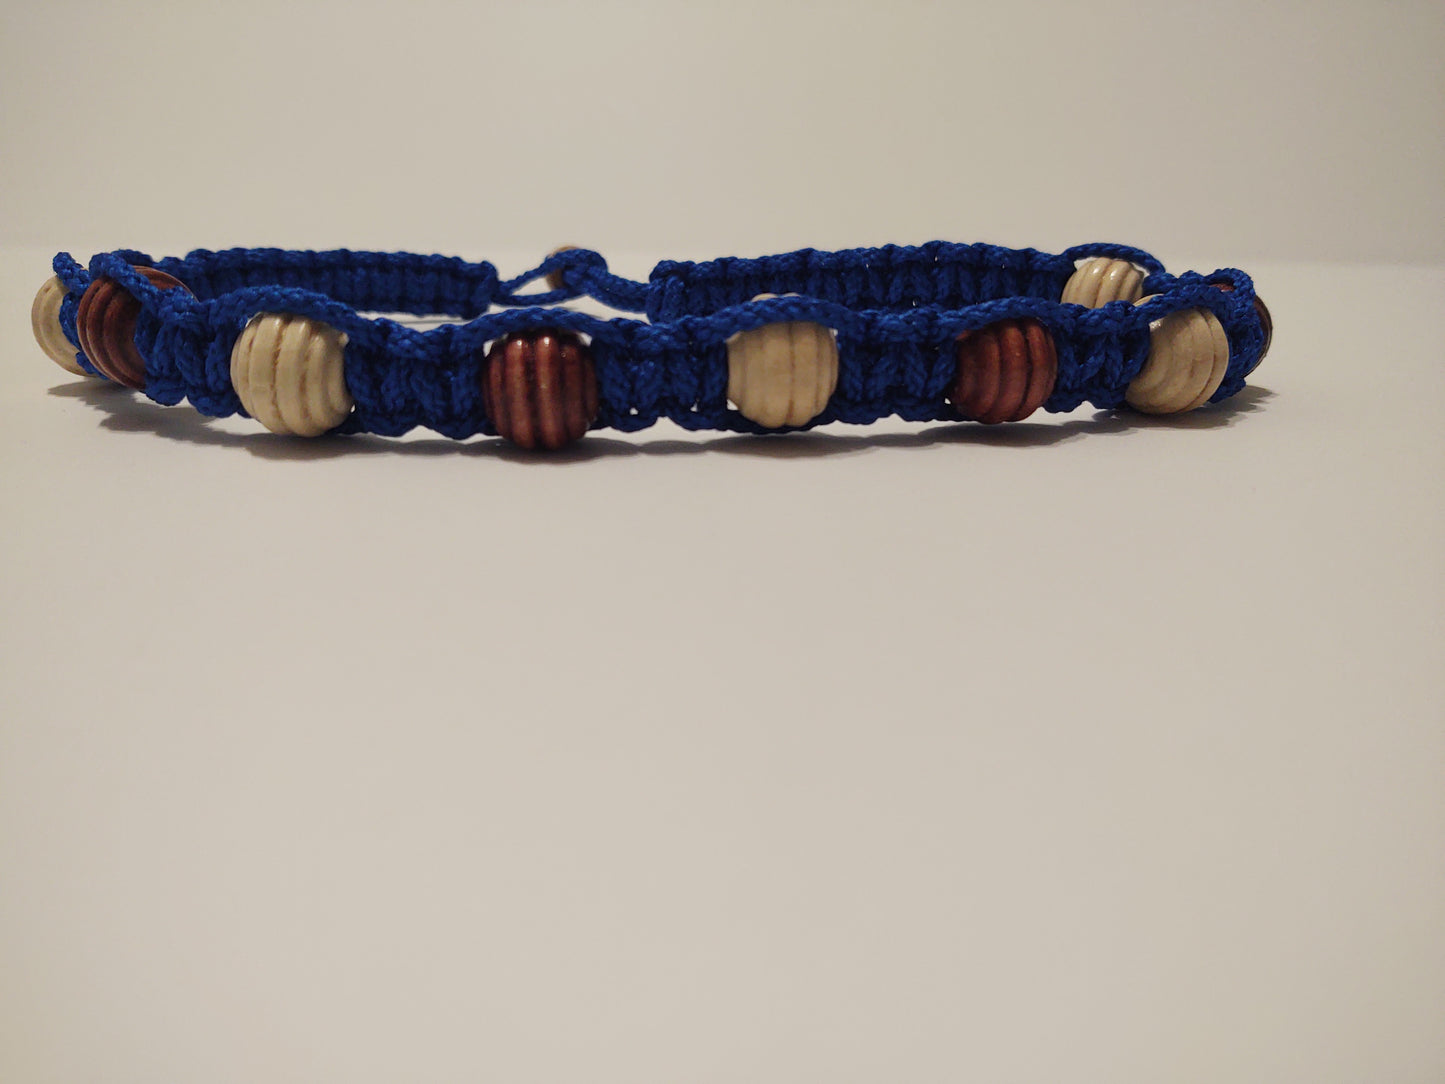 Macrame Choker Necklace - Wooden Beads